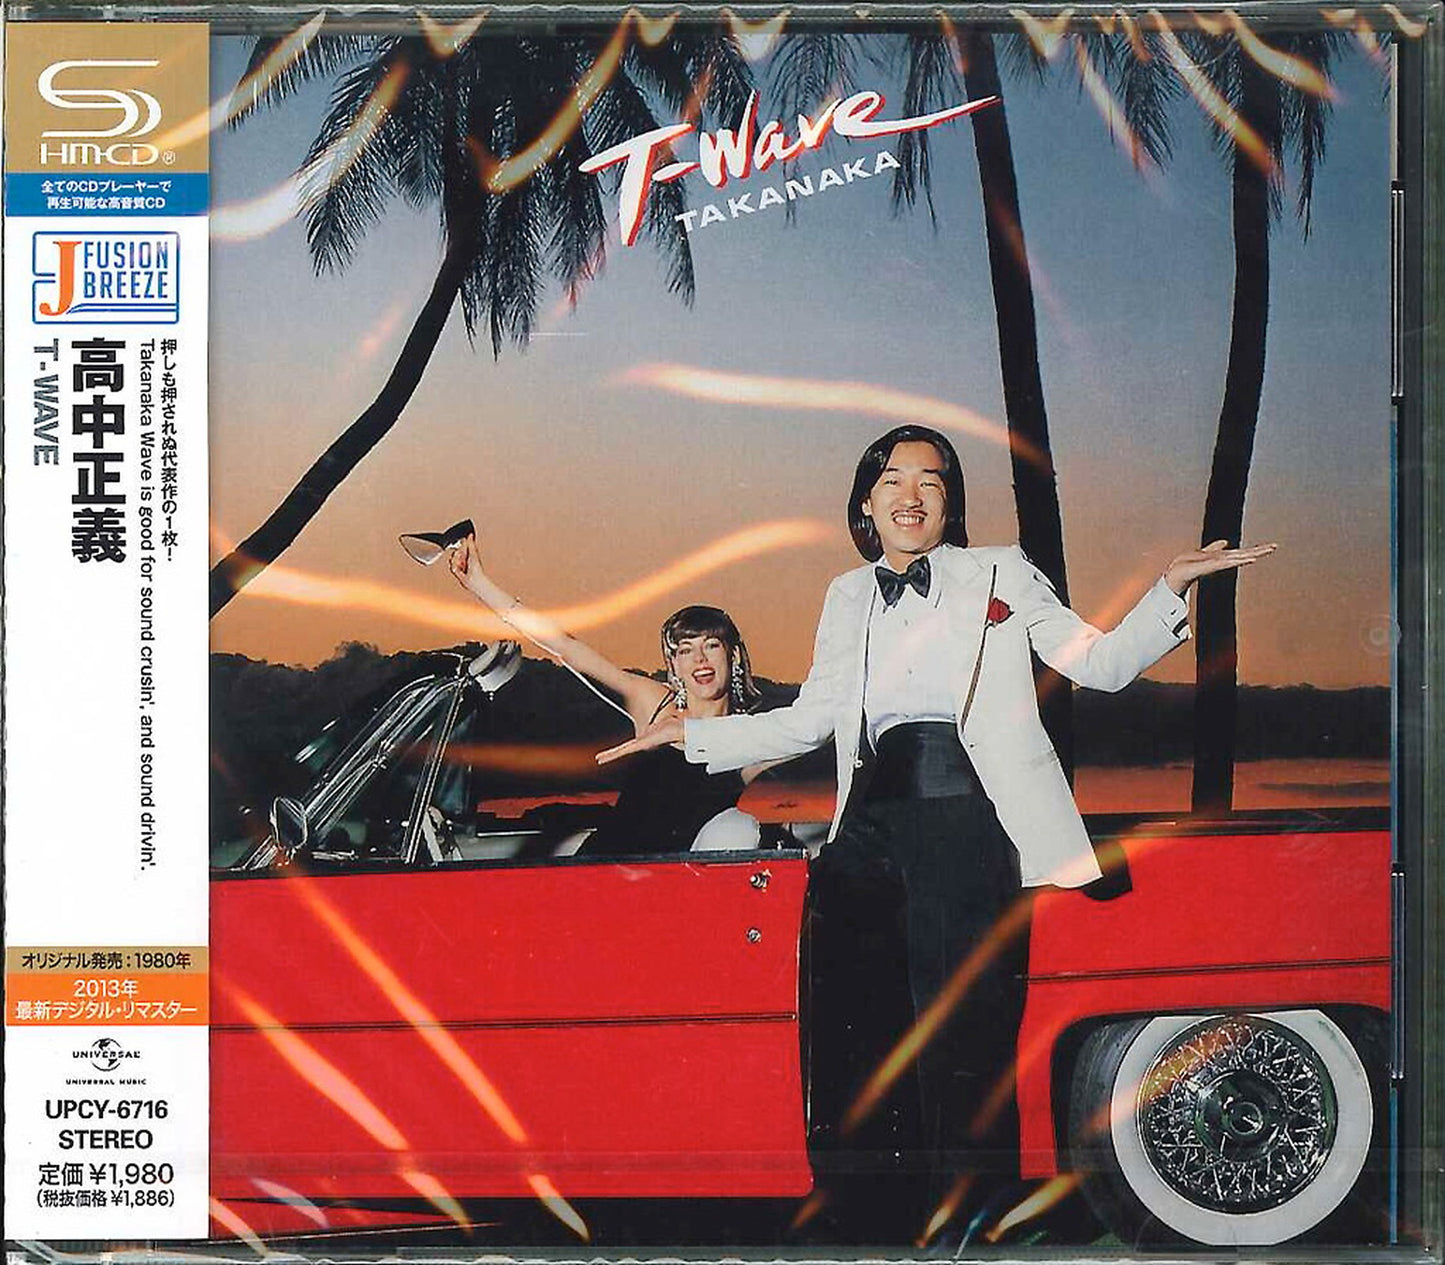 Masayoshi Takanaka - T-Wave - Japan  SHM-CD